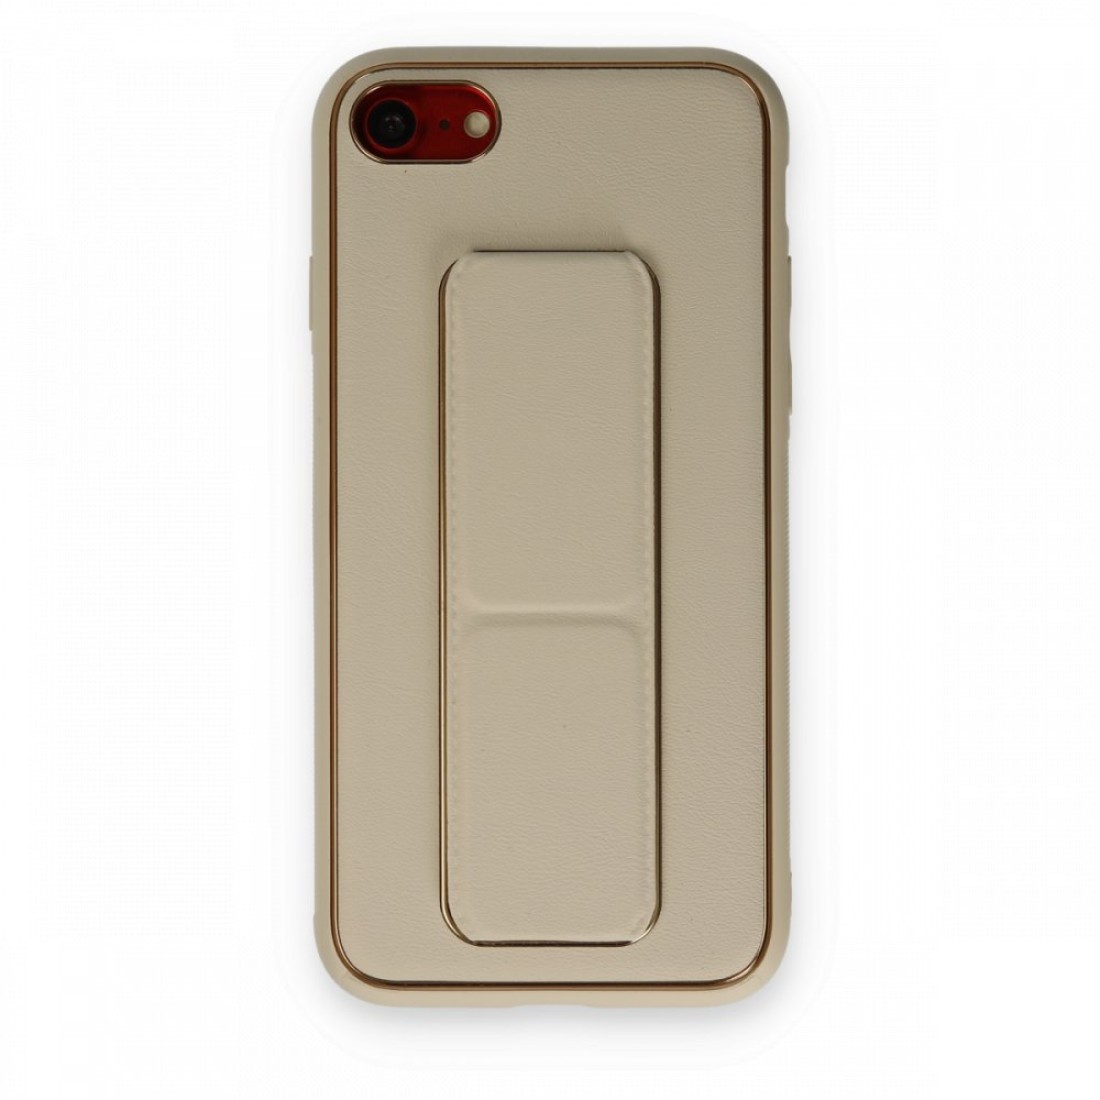 Apple iPhone SE 2020 Kılıf Coco Deri Standlı Kapak - Gold